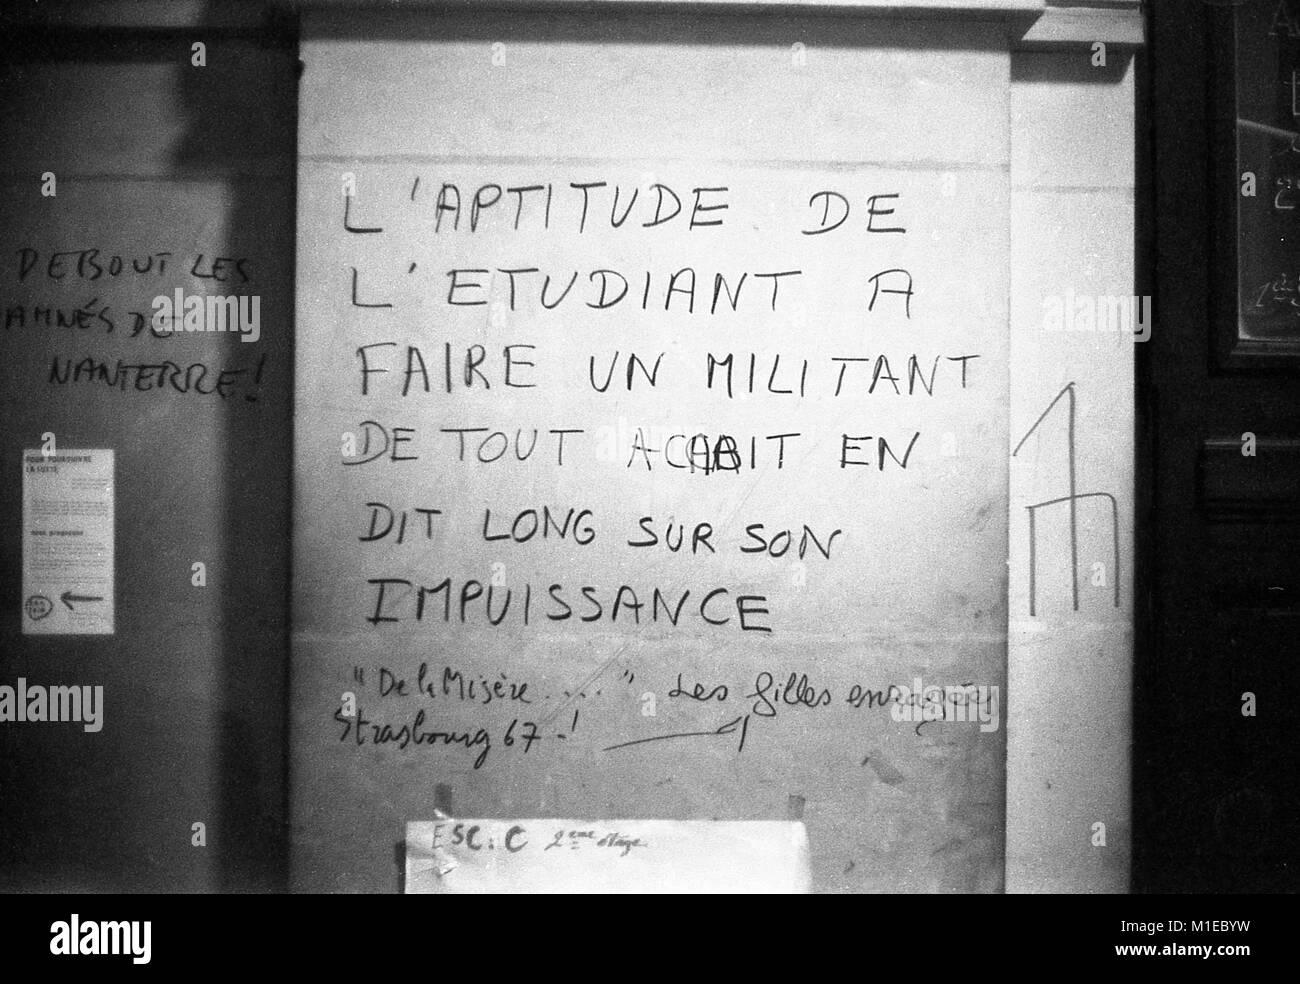 Philippe Gras / Le Pictorium - Mayo 1968 - 1968 - Francia / Ile-de-France (región) / Paris - Poster, consejo de trabajadores Foto de stock